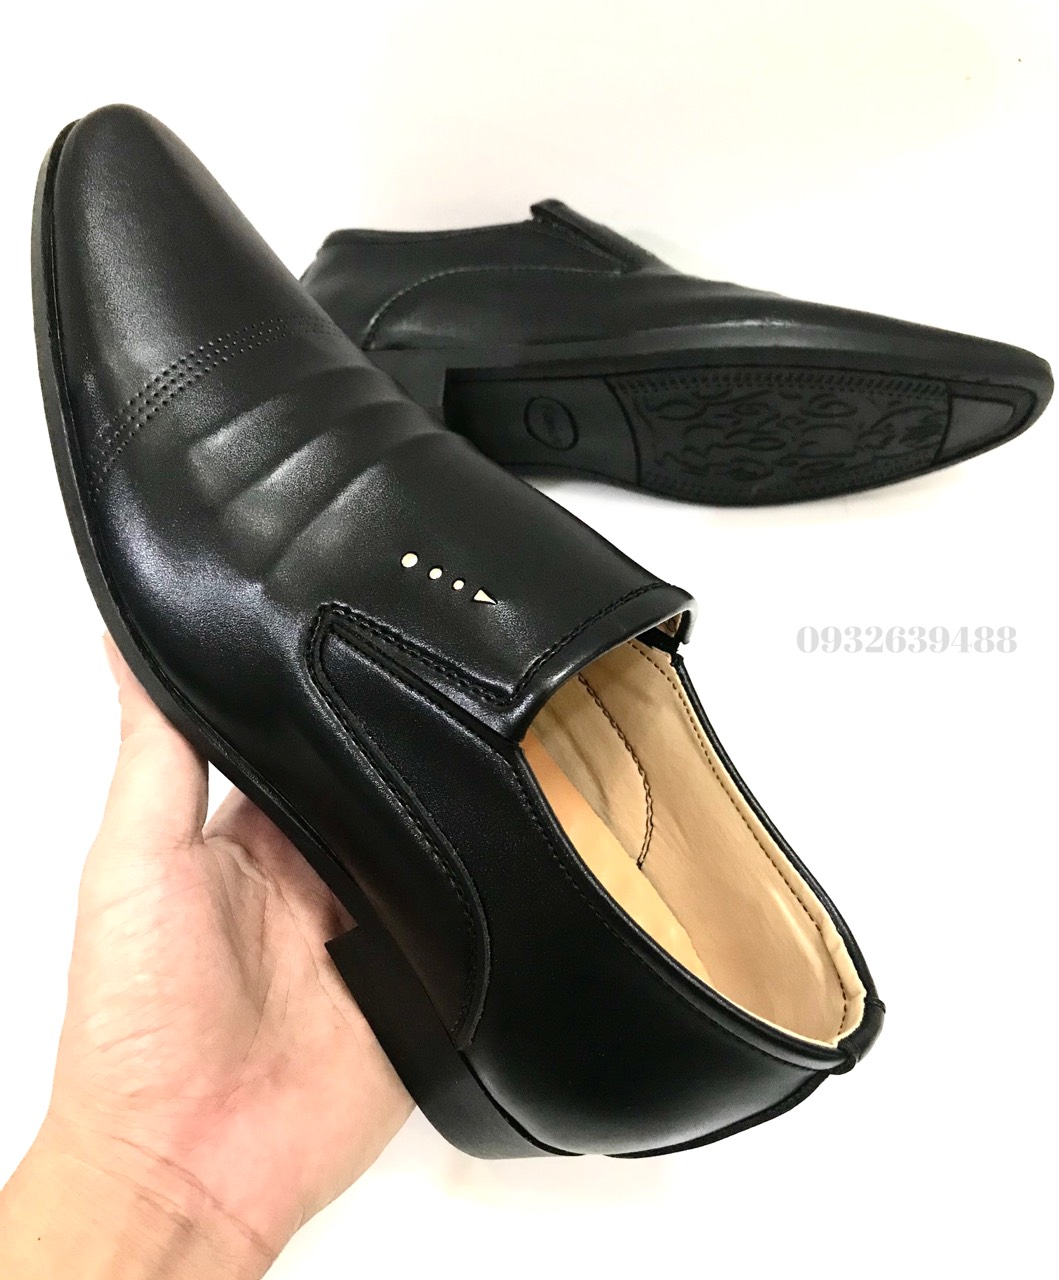 Giày công sở tăng chiều cao 6-7cm..da mềm..mã TC01..size từ 39 -44..màu đen..mẫu mới nhất hiện nay